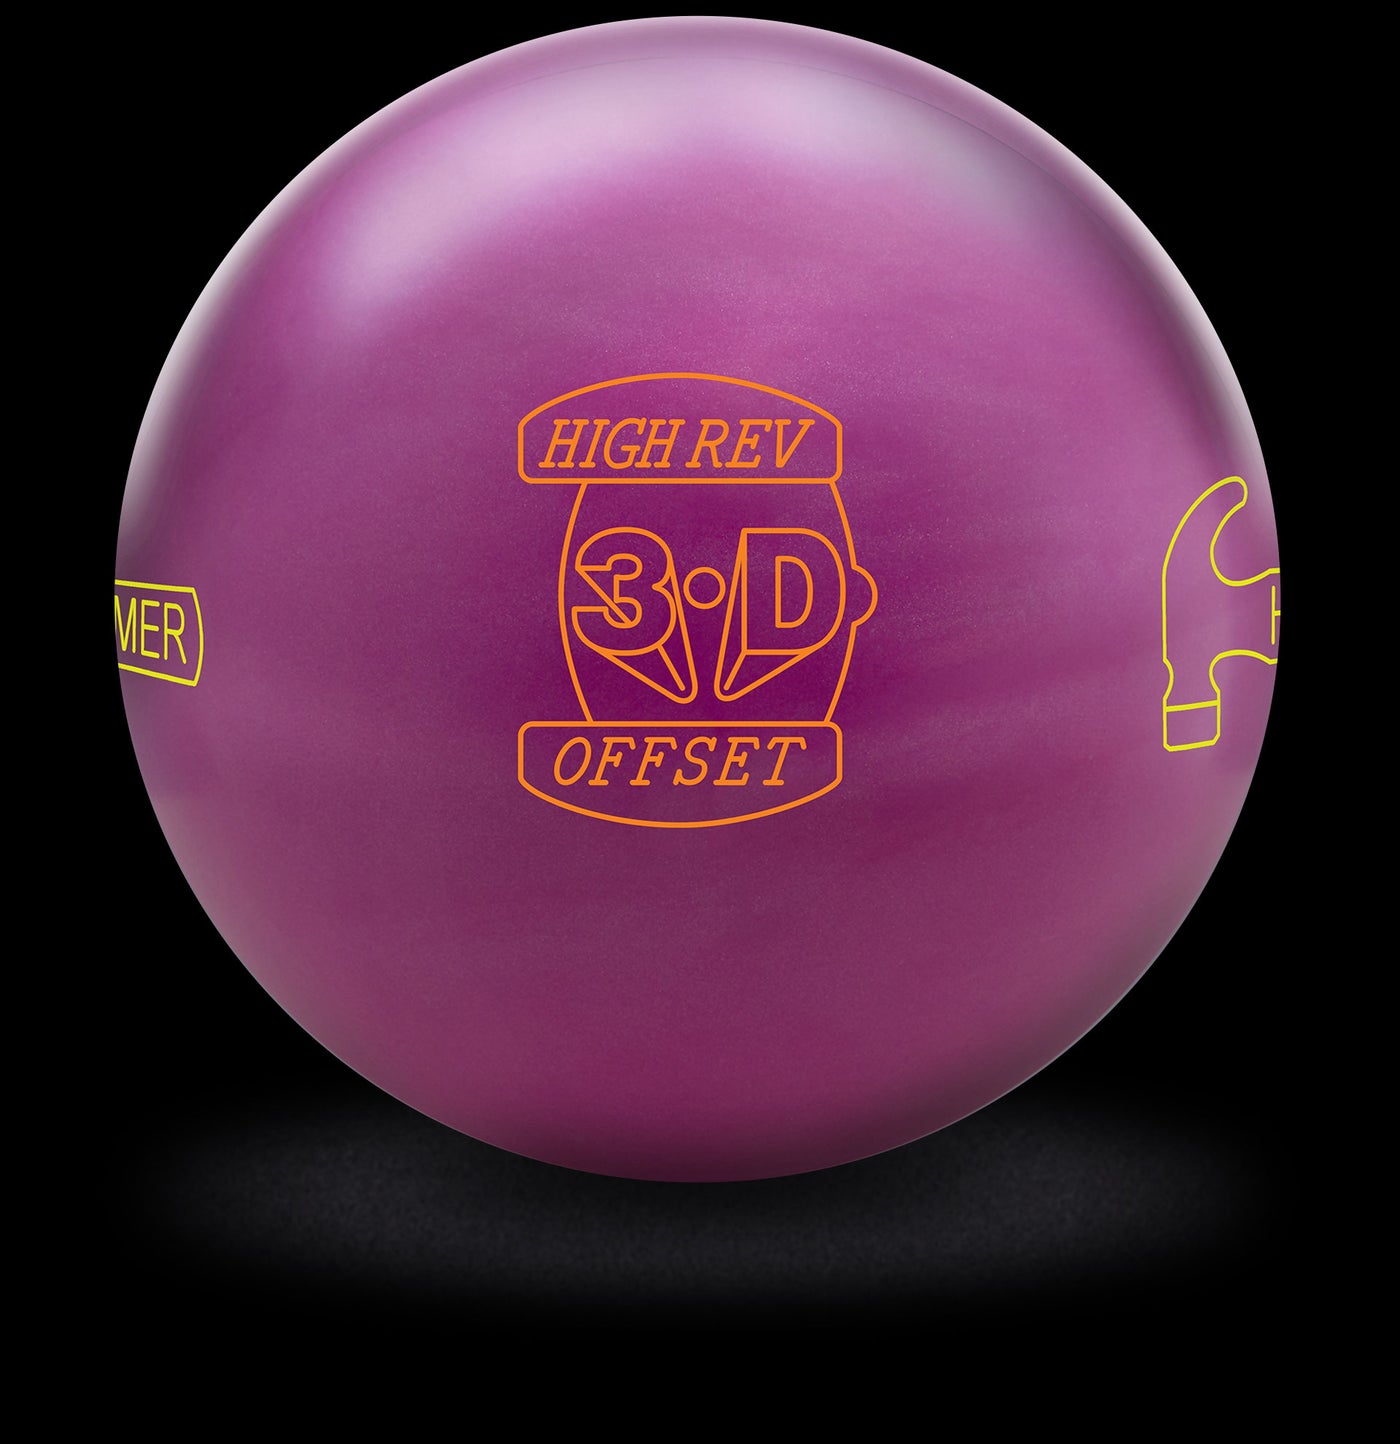 3-D Offset Bowling Ball